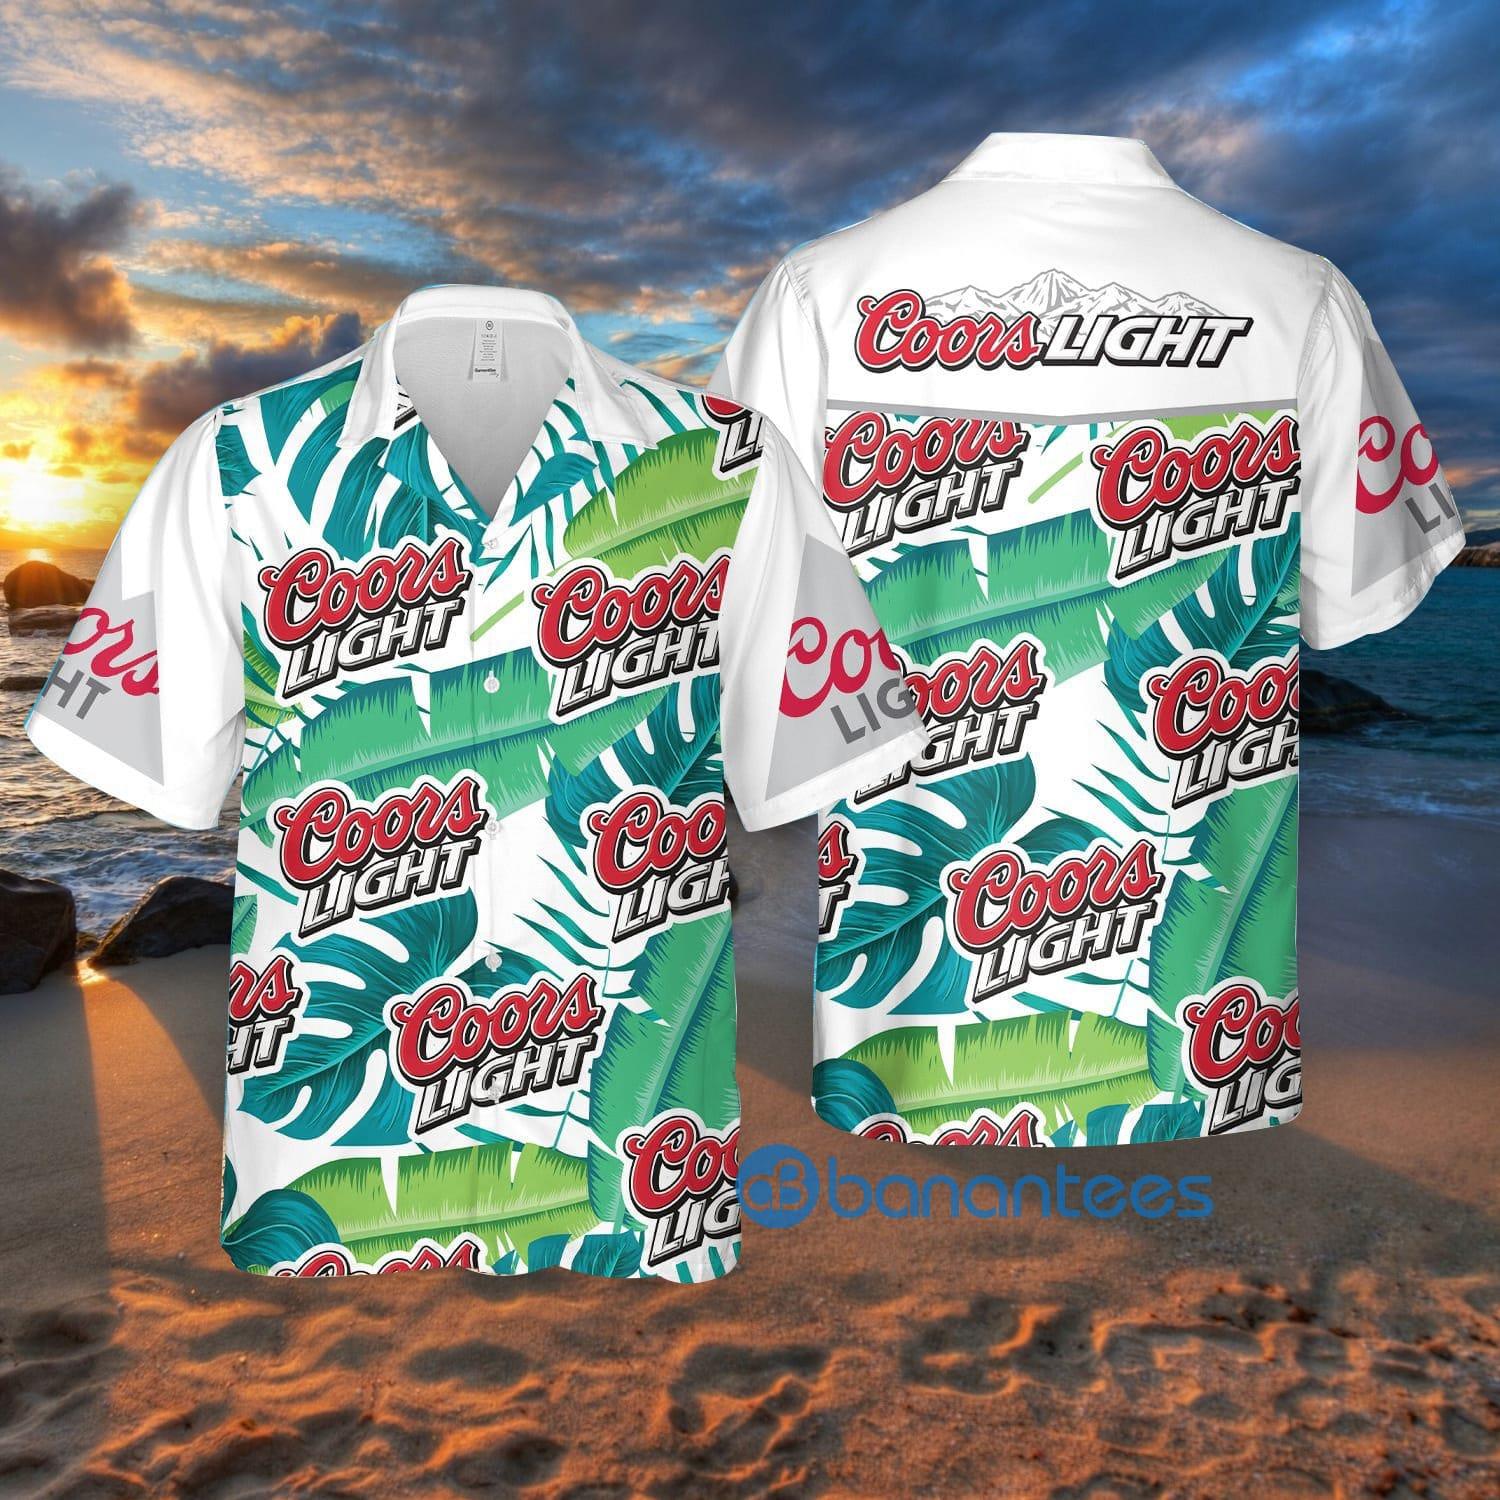 Coors Light Hawaiian Shirt Summer Gift For Men And Women - Banantees